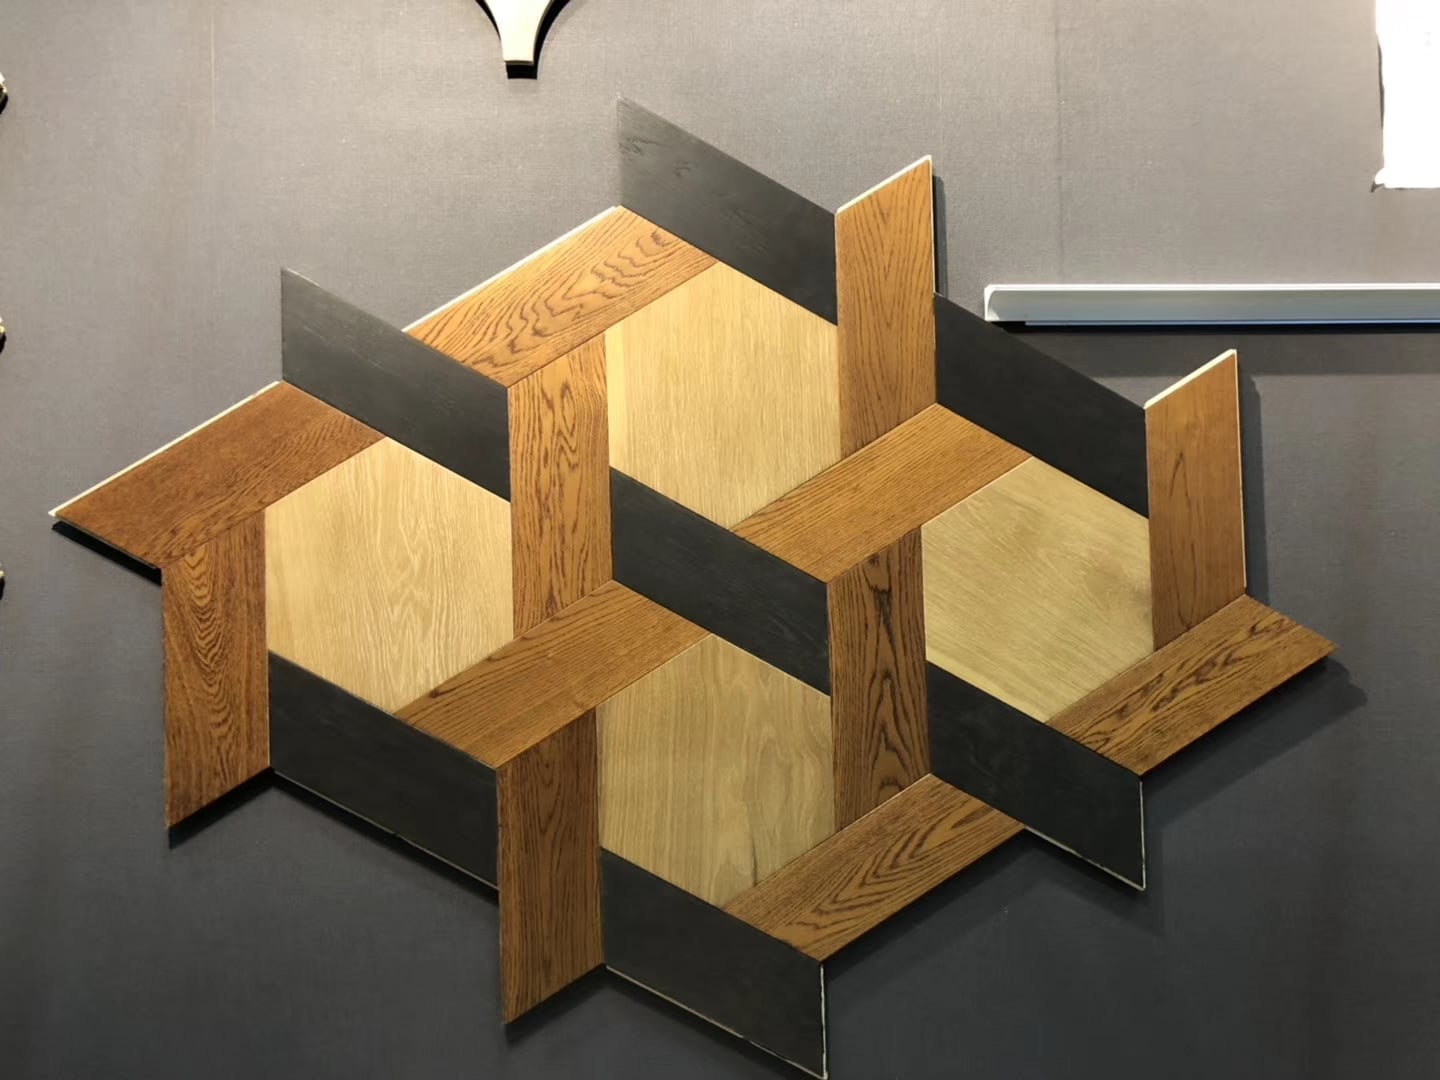 Inovative custom made hardwood floors